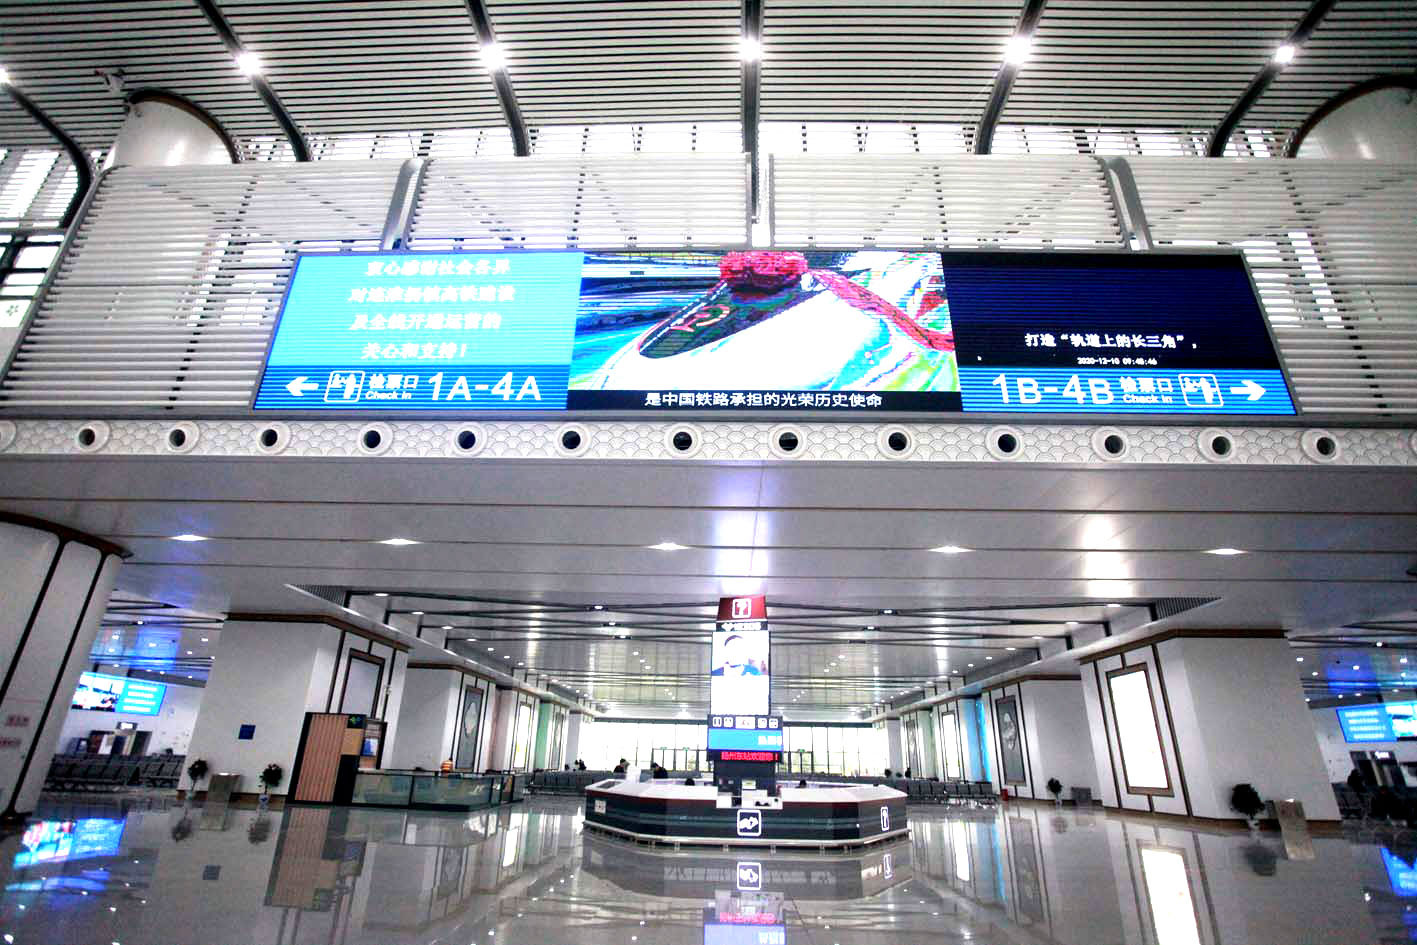 连淮扬镇铁路今正式开通运营 扬州全域迈入“高铁时代”